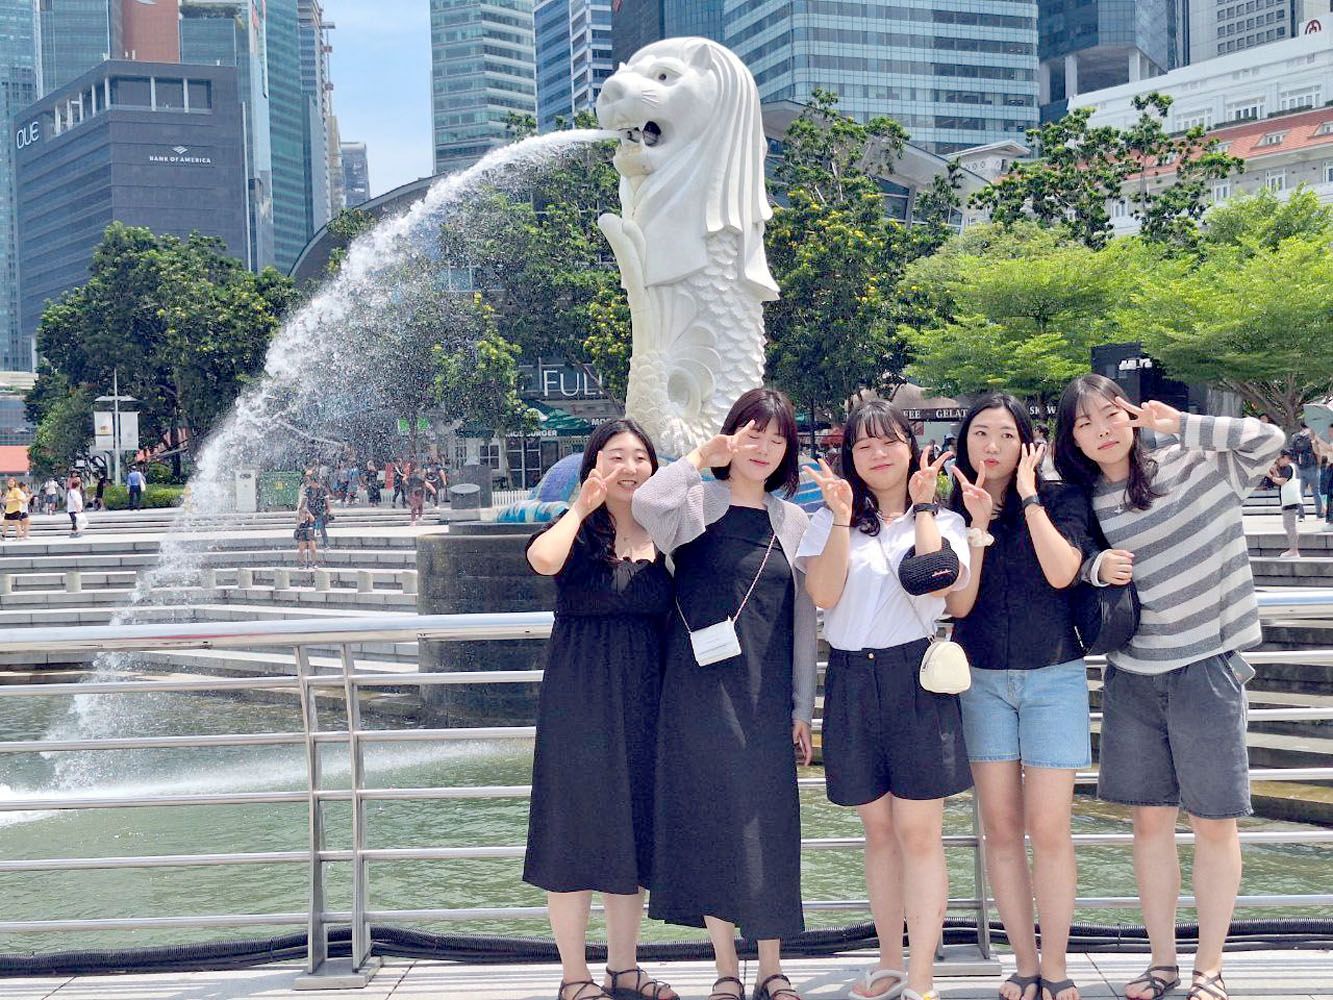 Sejumlah wisatawan asal Thailand terlihat mengabadikan momen liburan mereka di Singapura. Saat ini kawasan Patung Singa di Singapura paling digemari sejumlah wisatawan yang datang ke Singapura.